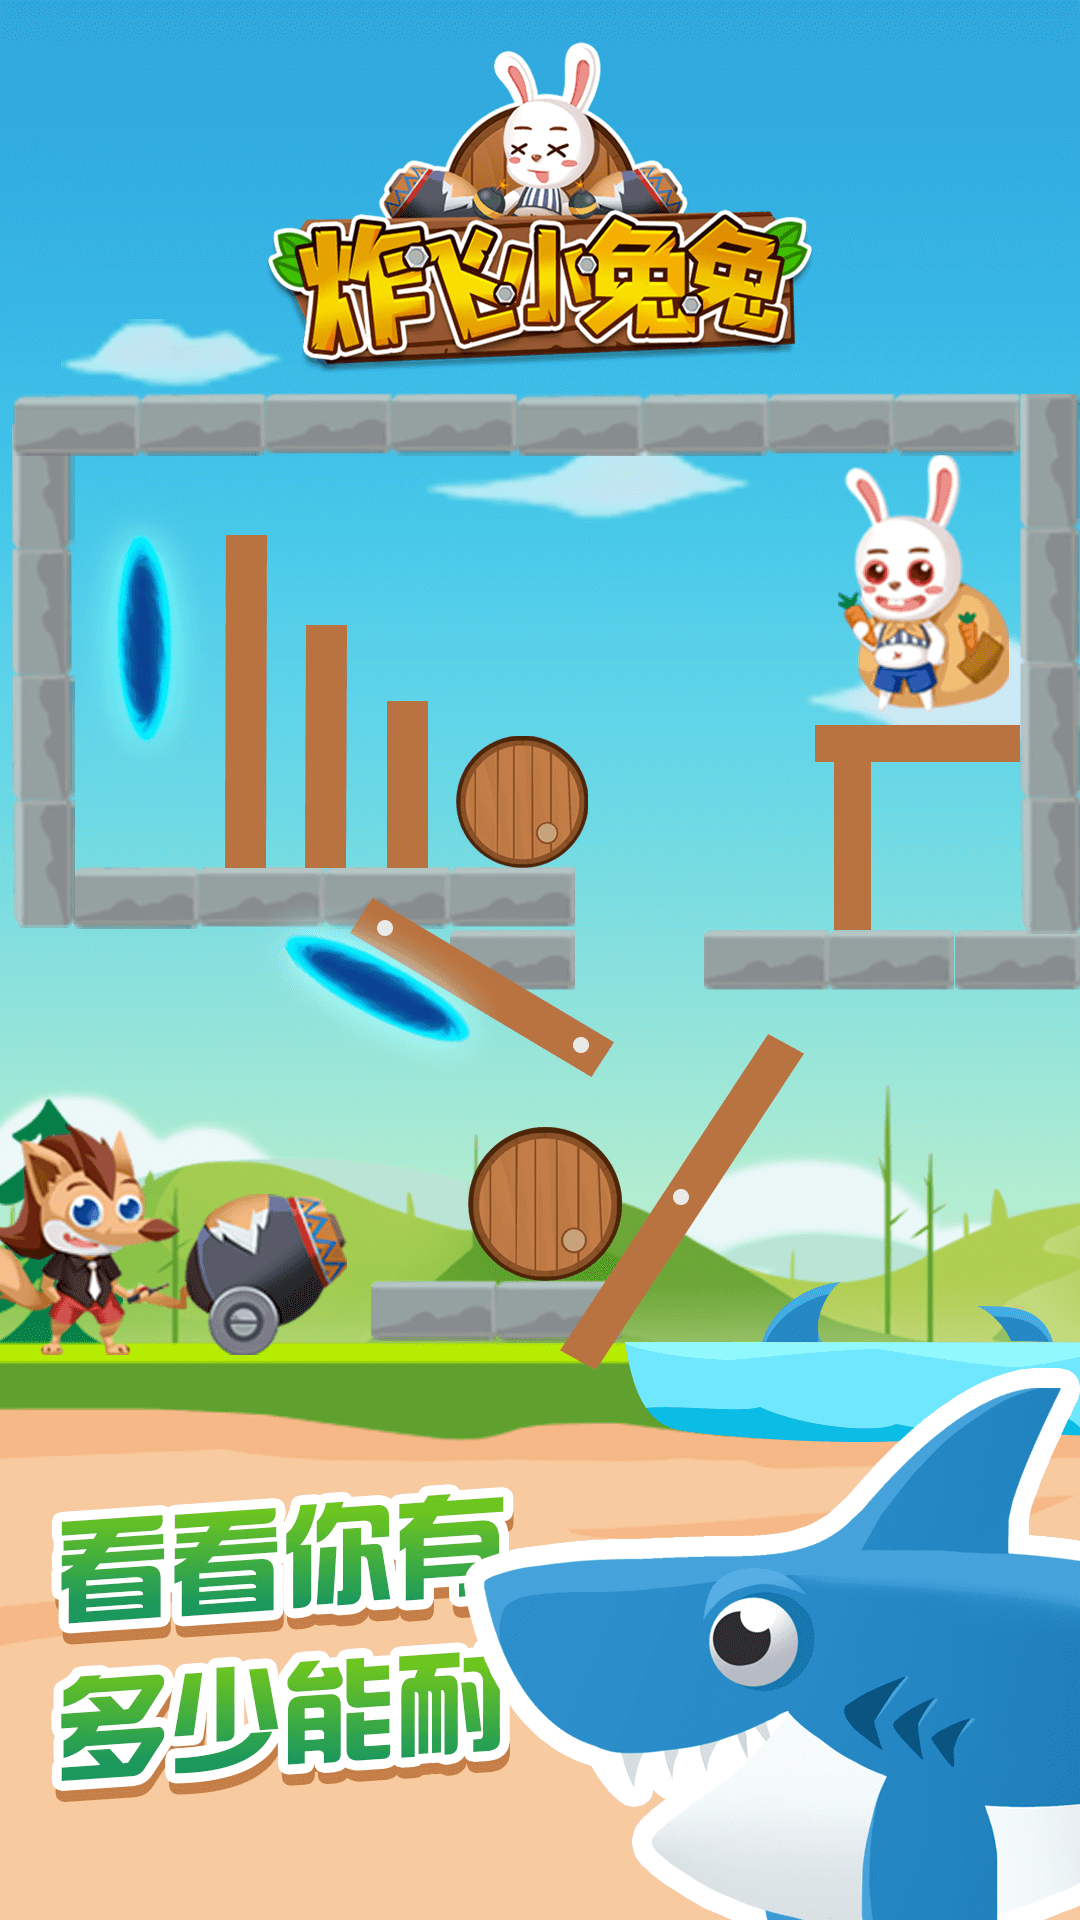 去兔子游戏_手机游戏兔子_爬在手机上的兔子游戏